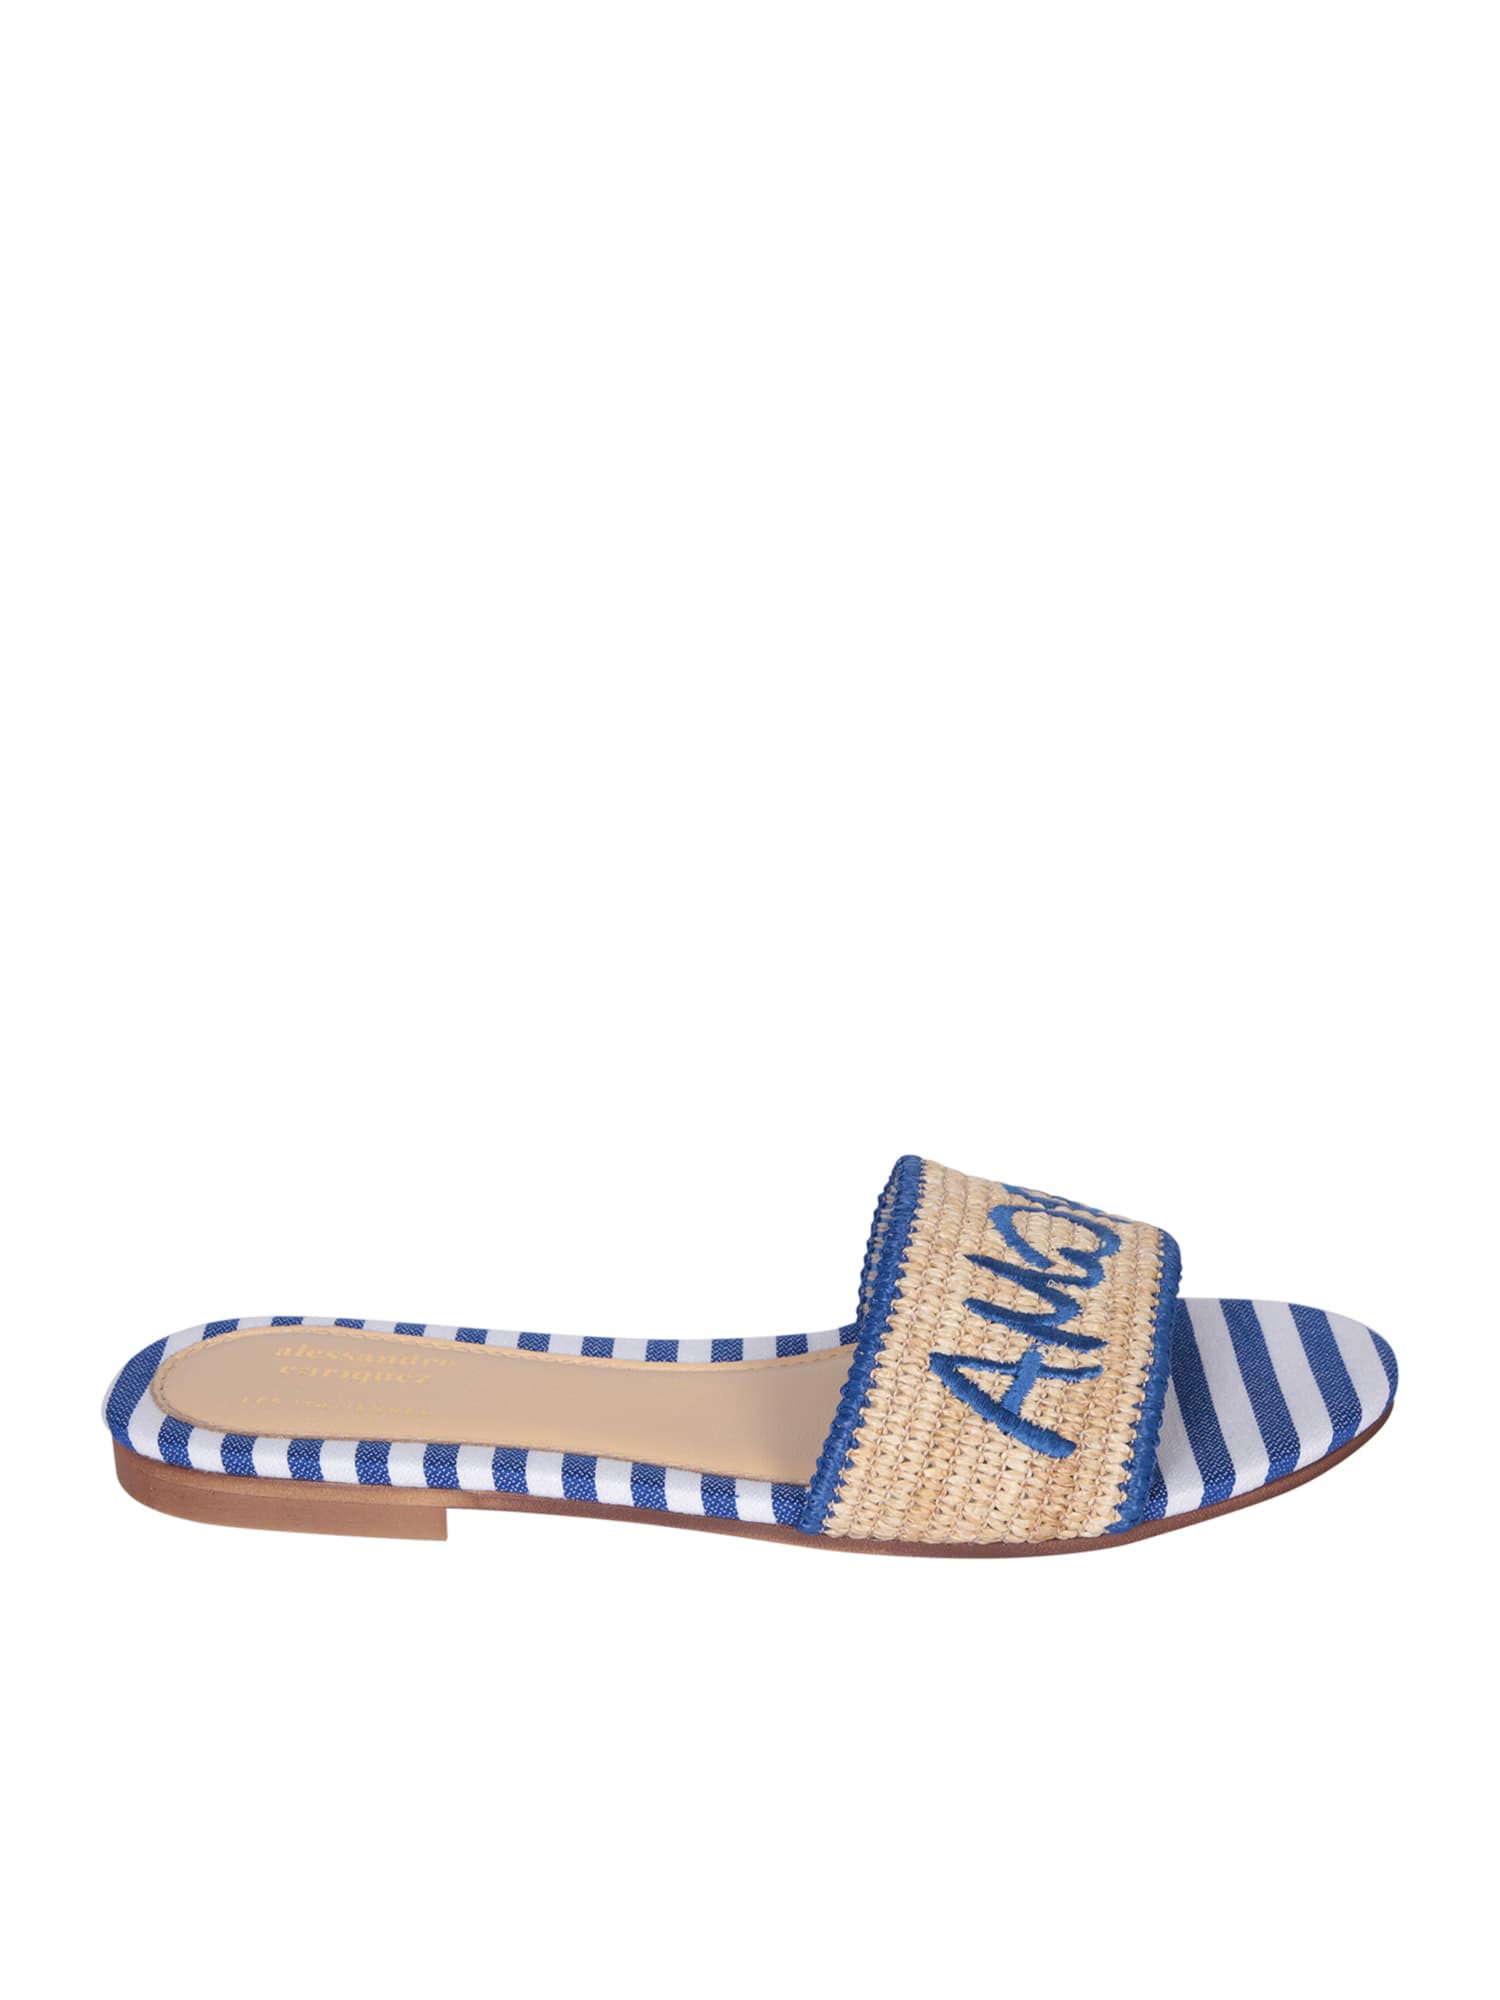 Amore Bei Blu Raffia And Fabric Sandals